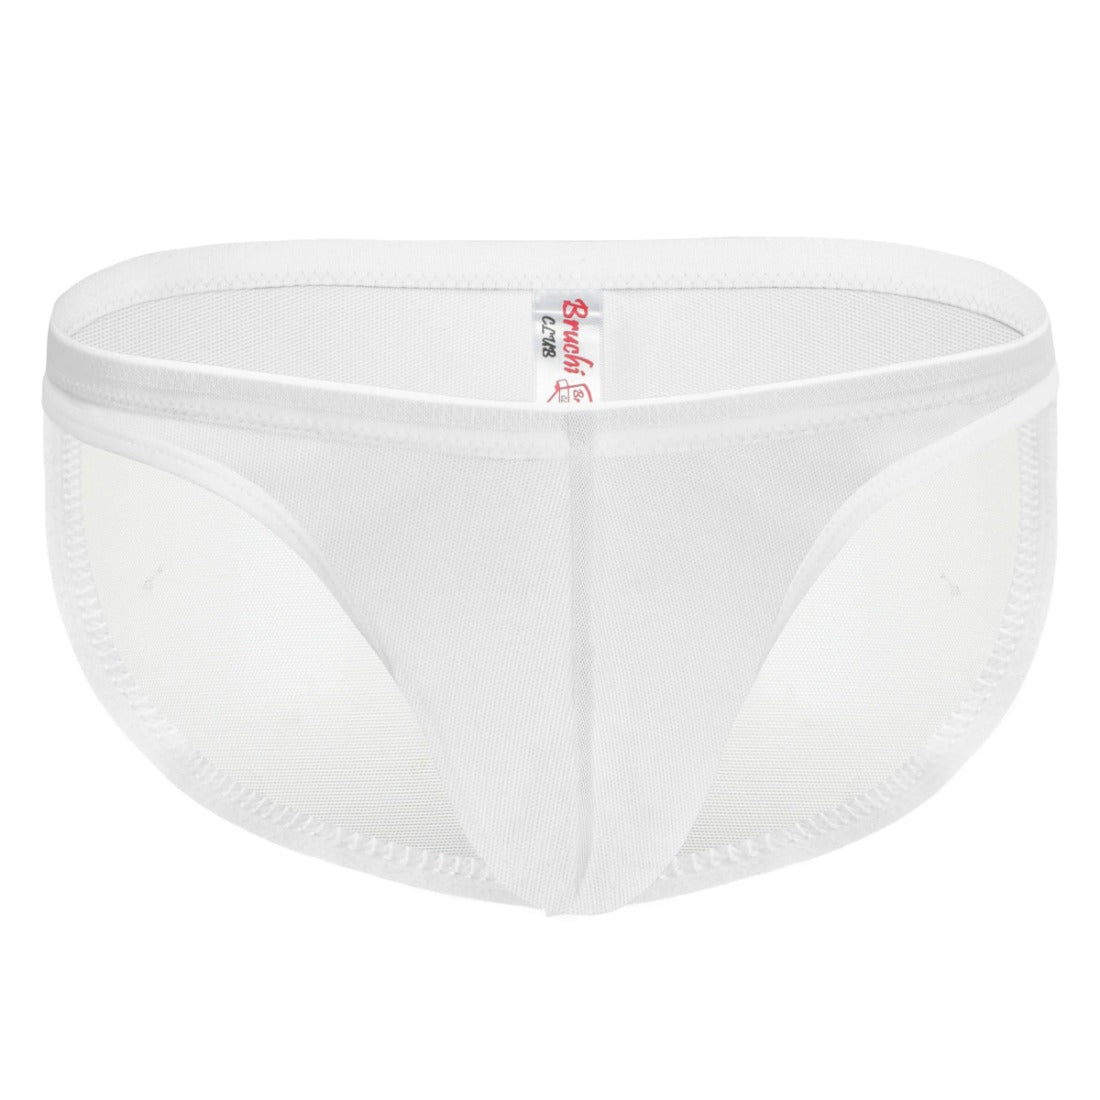 Men's Mesh Power Net Men Transparent Briefs Underwear (White) - GillKart